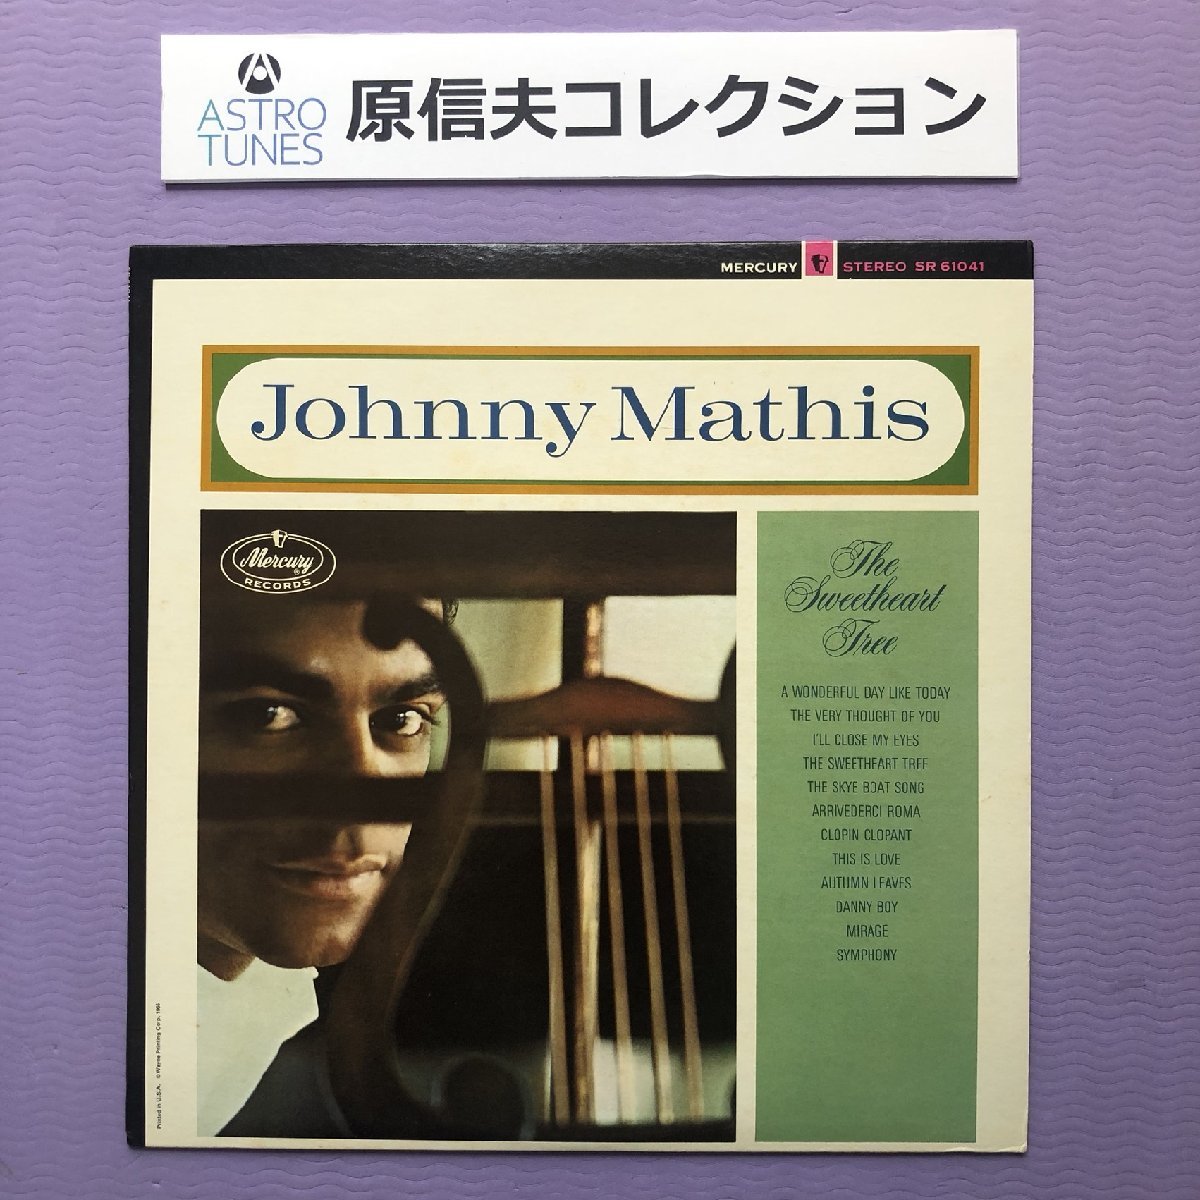 １着でも送料無料 原信夫Collection 美ジャケ Tree Sweetheart The LPレコード Mathis Johnny ジョニー・マティス 1965年米国オリジナルリリース盤 激レア その他